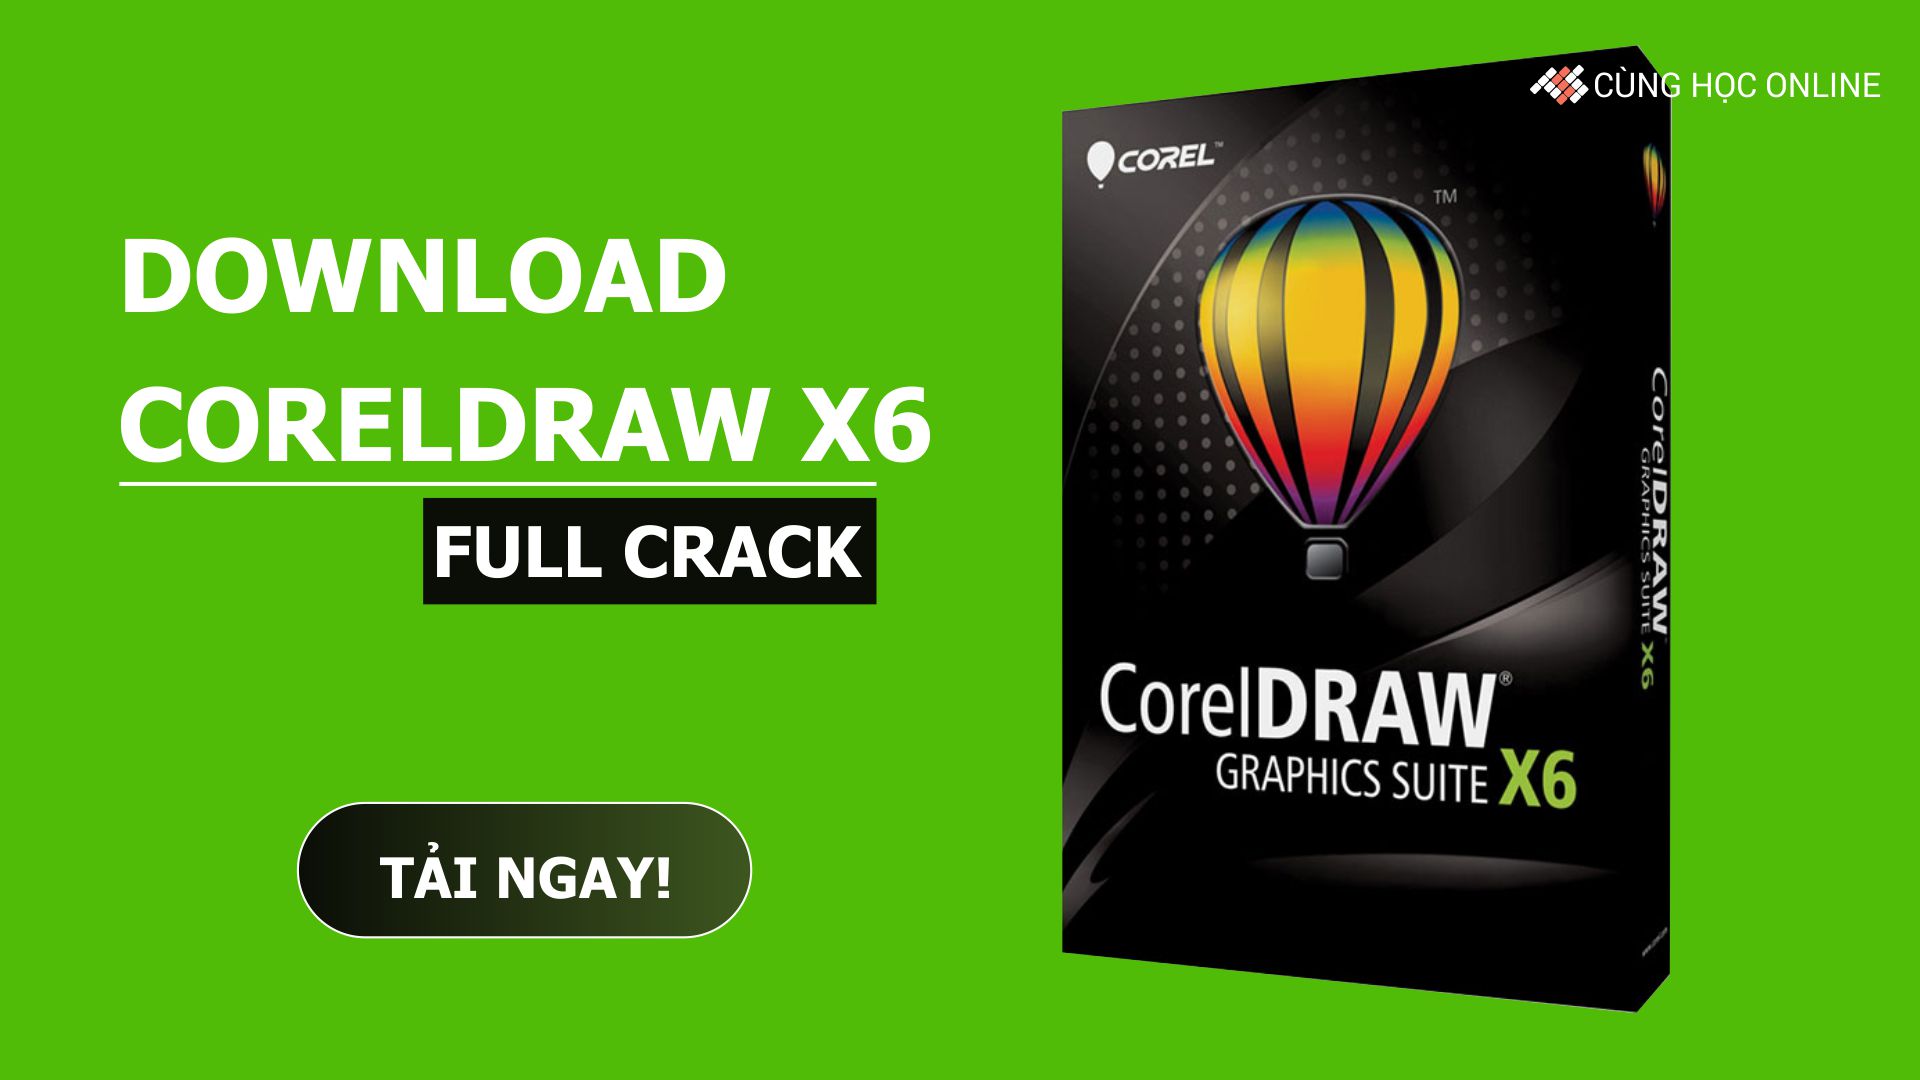 coreldraw graphics suite x6 full crack